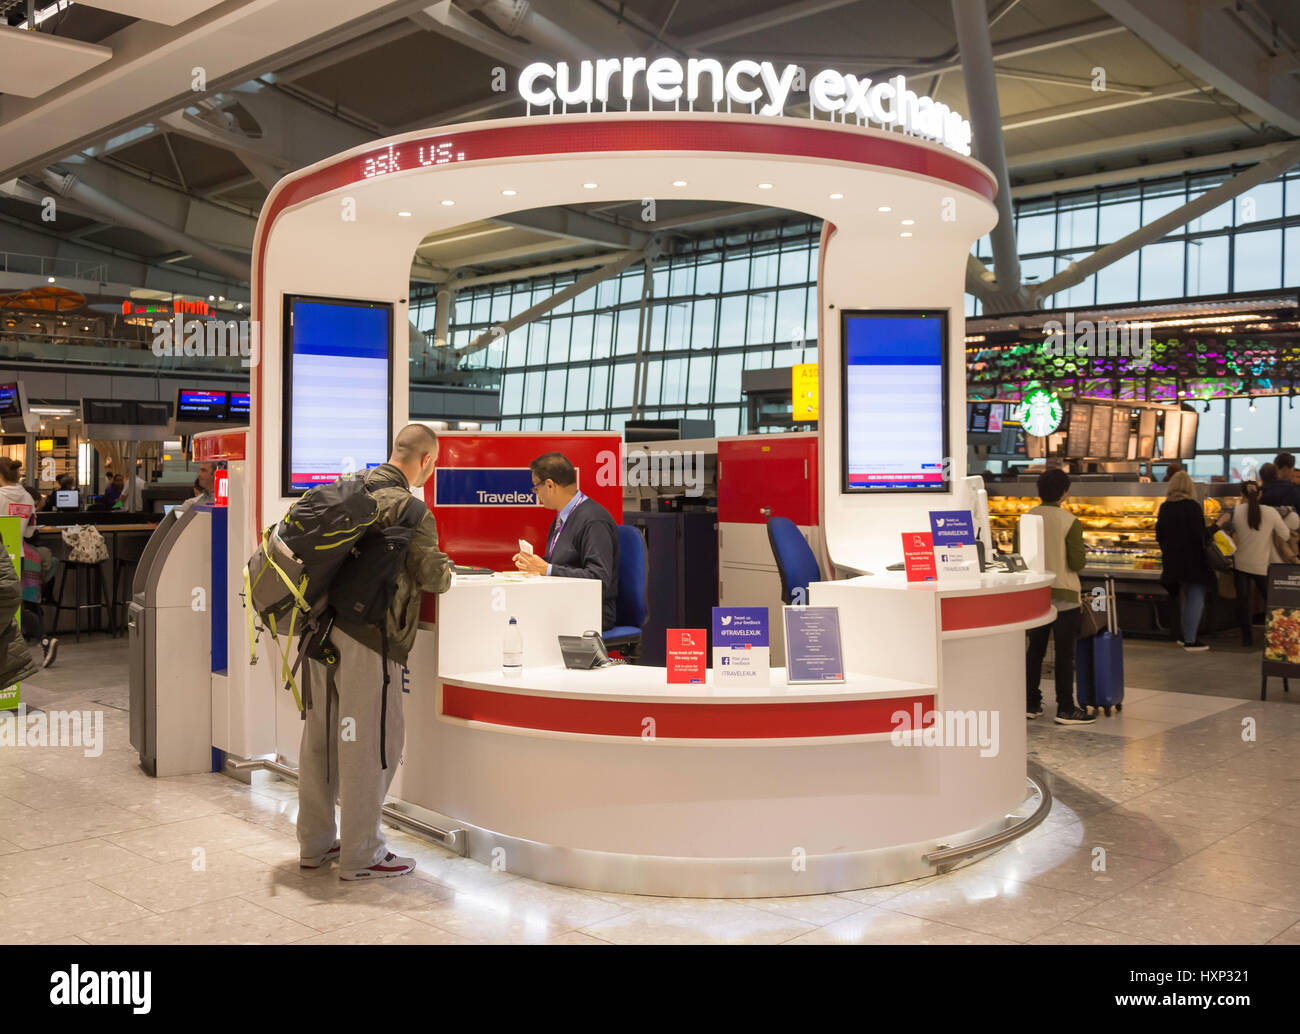 Delhi airport currency exchange